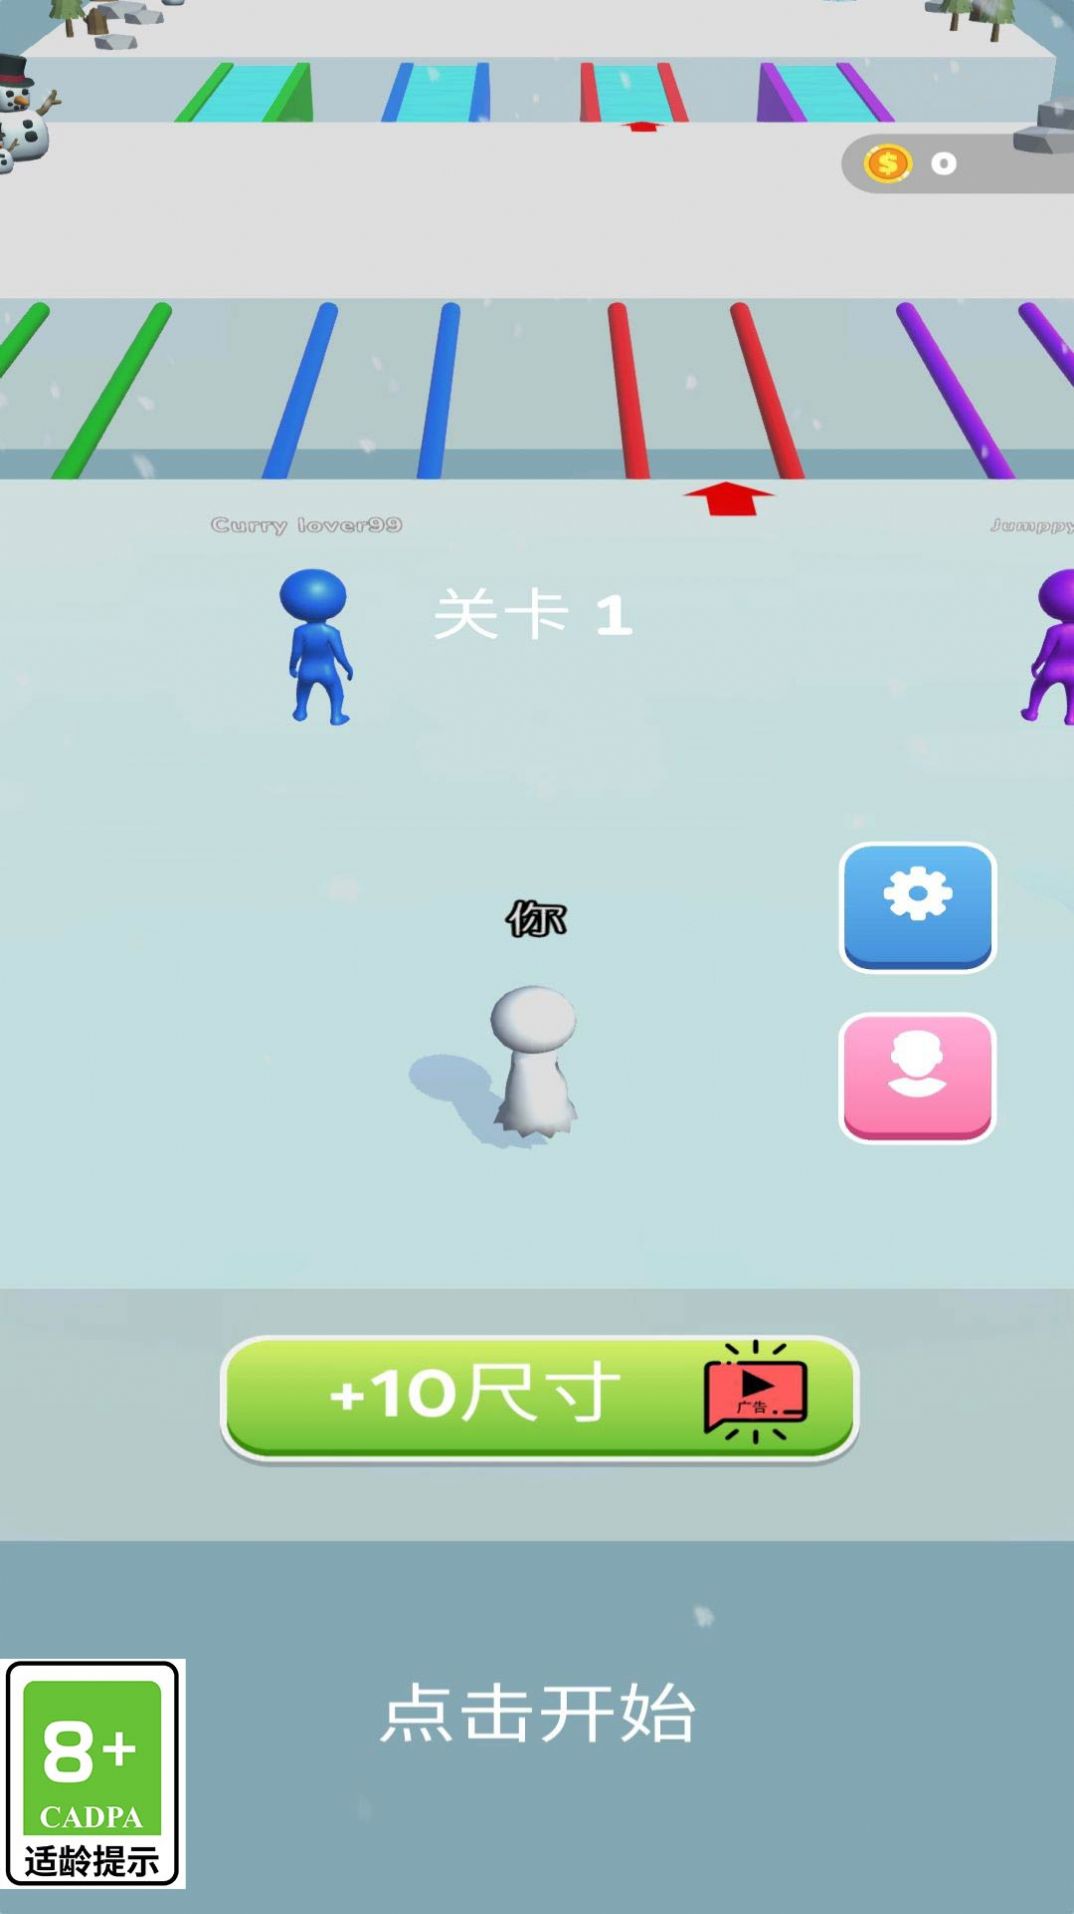 扫雪小能手游戏安卓版  v1.0.2截图